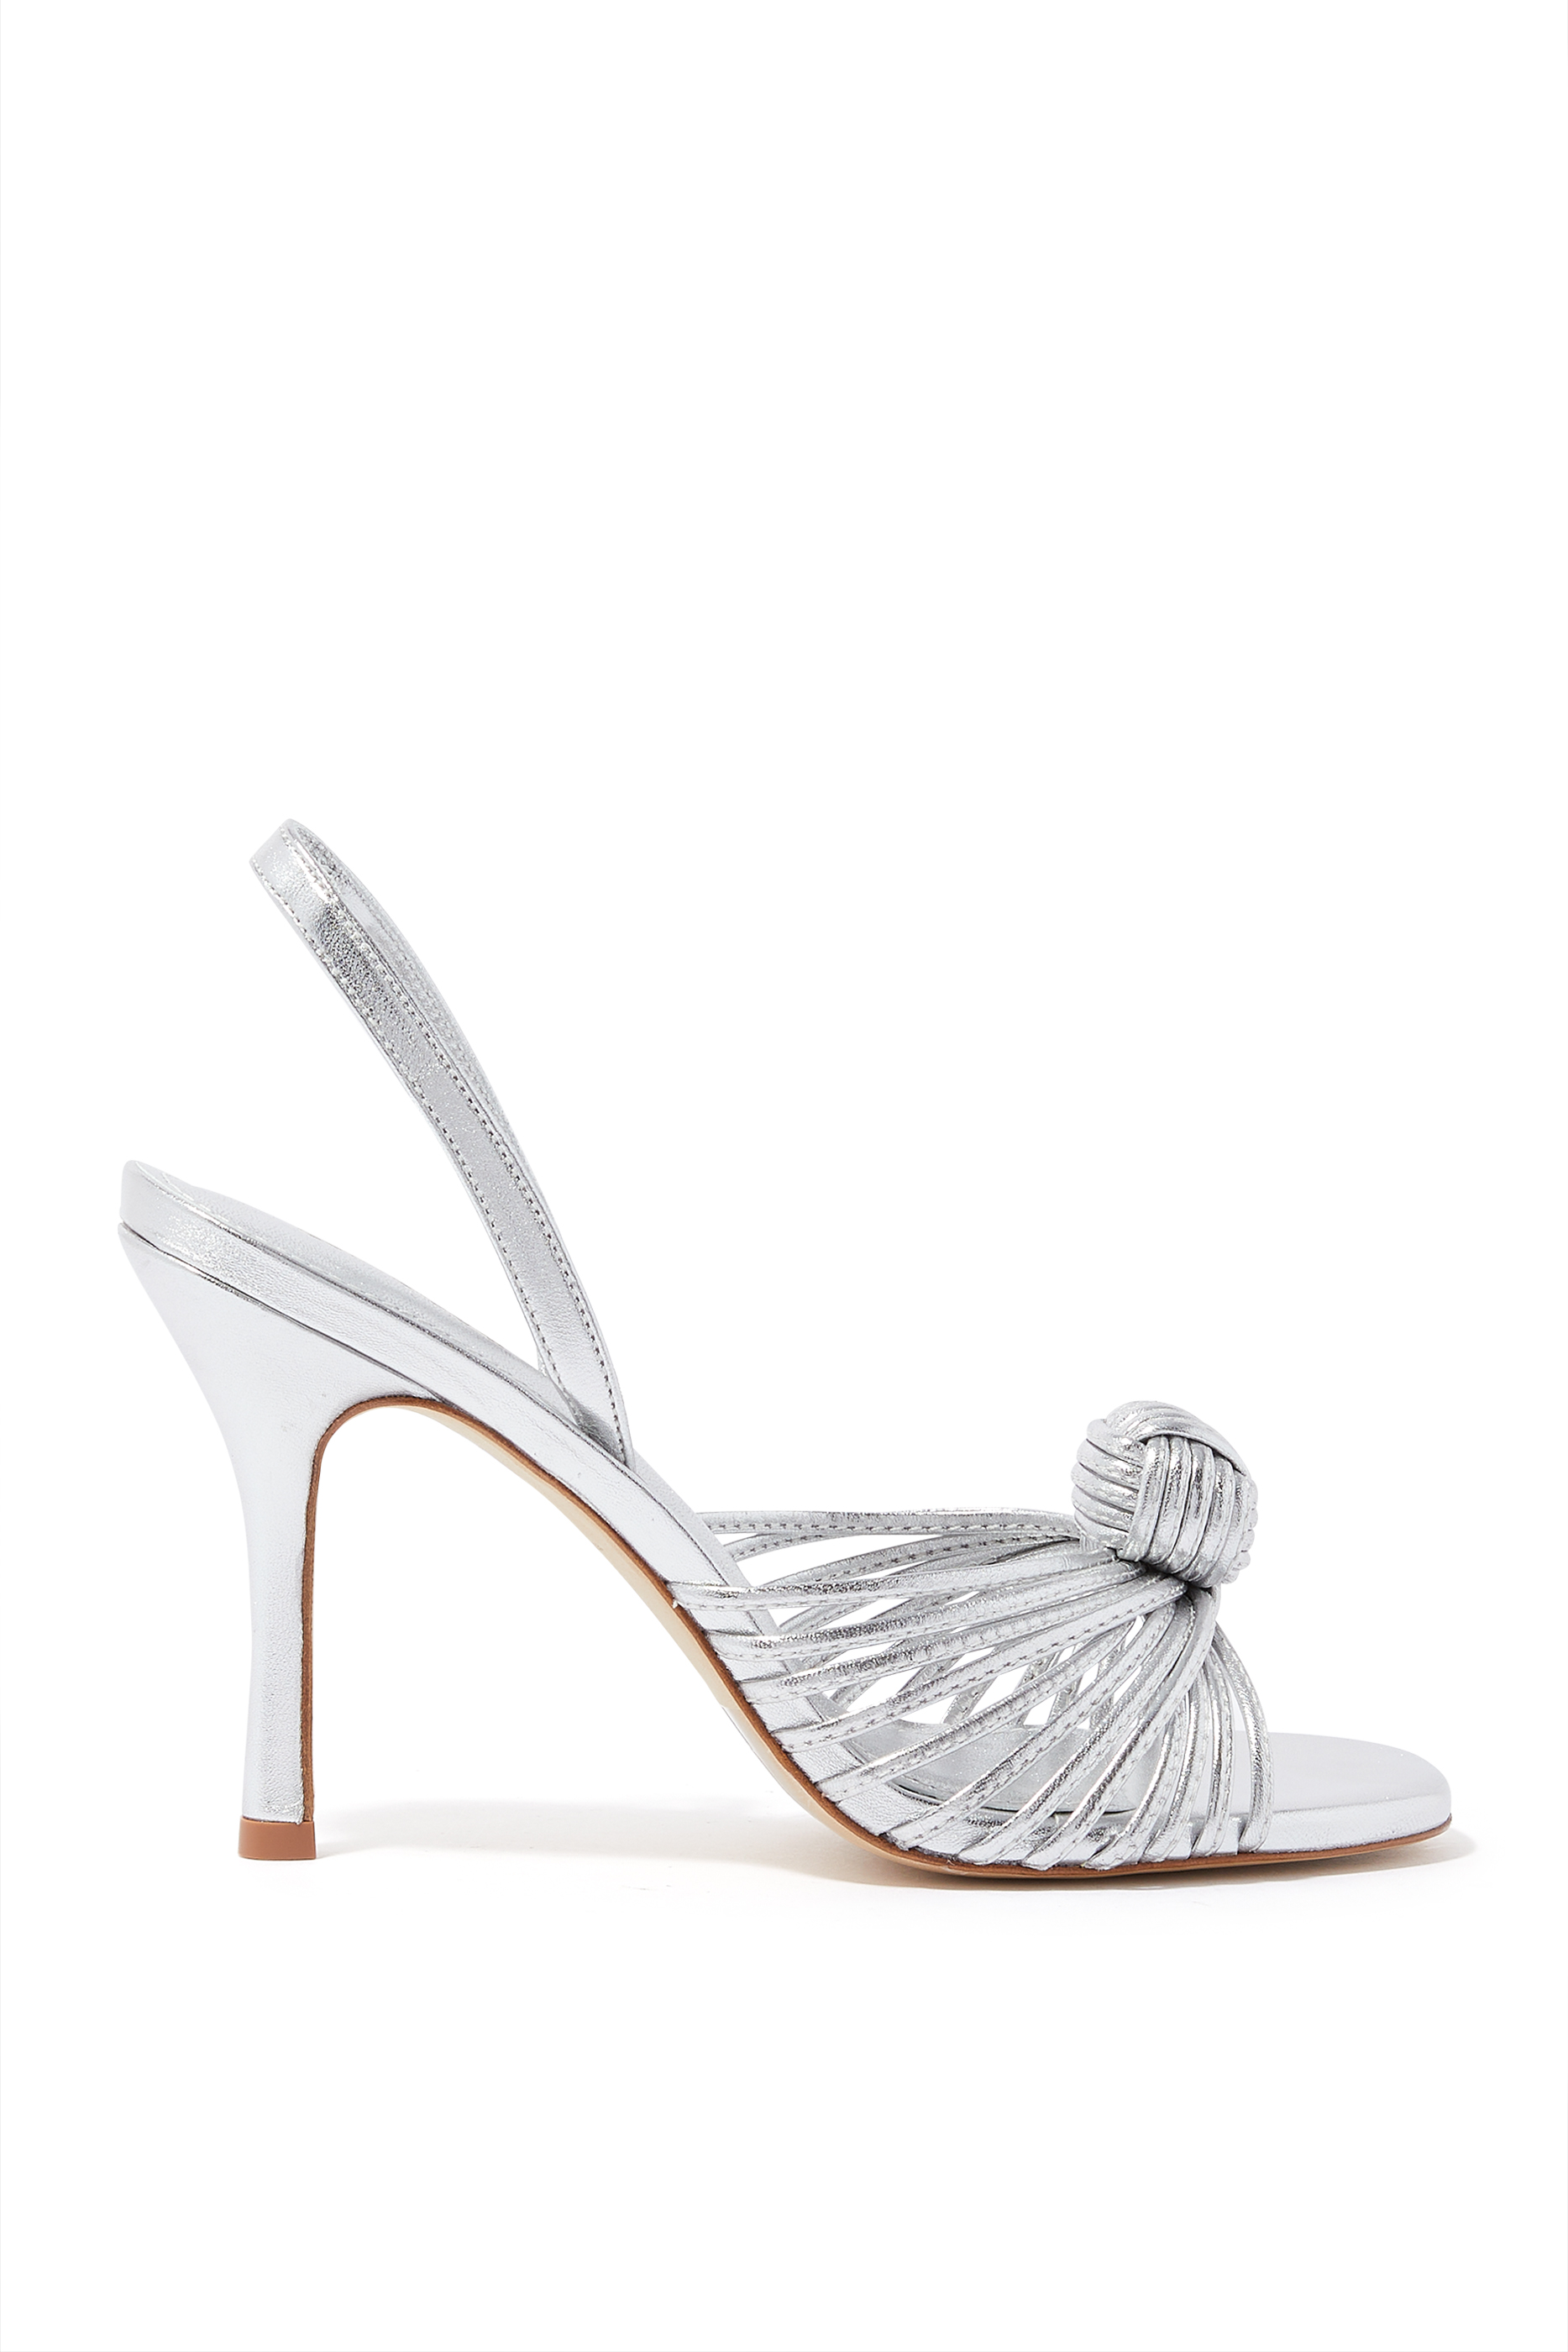 Buy Larroude Valerie 95 Heeled Slingback Sandals for Womens ...